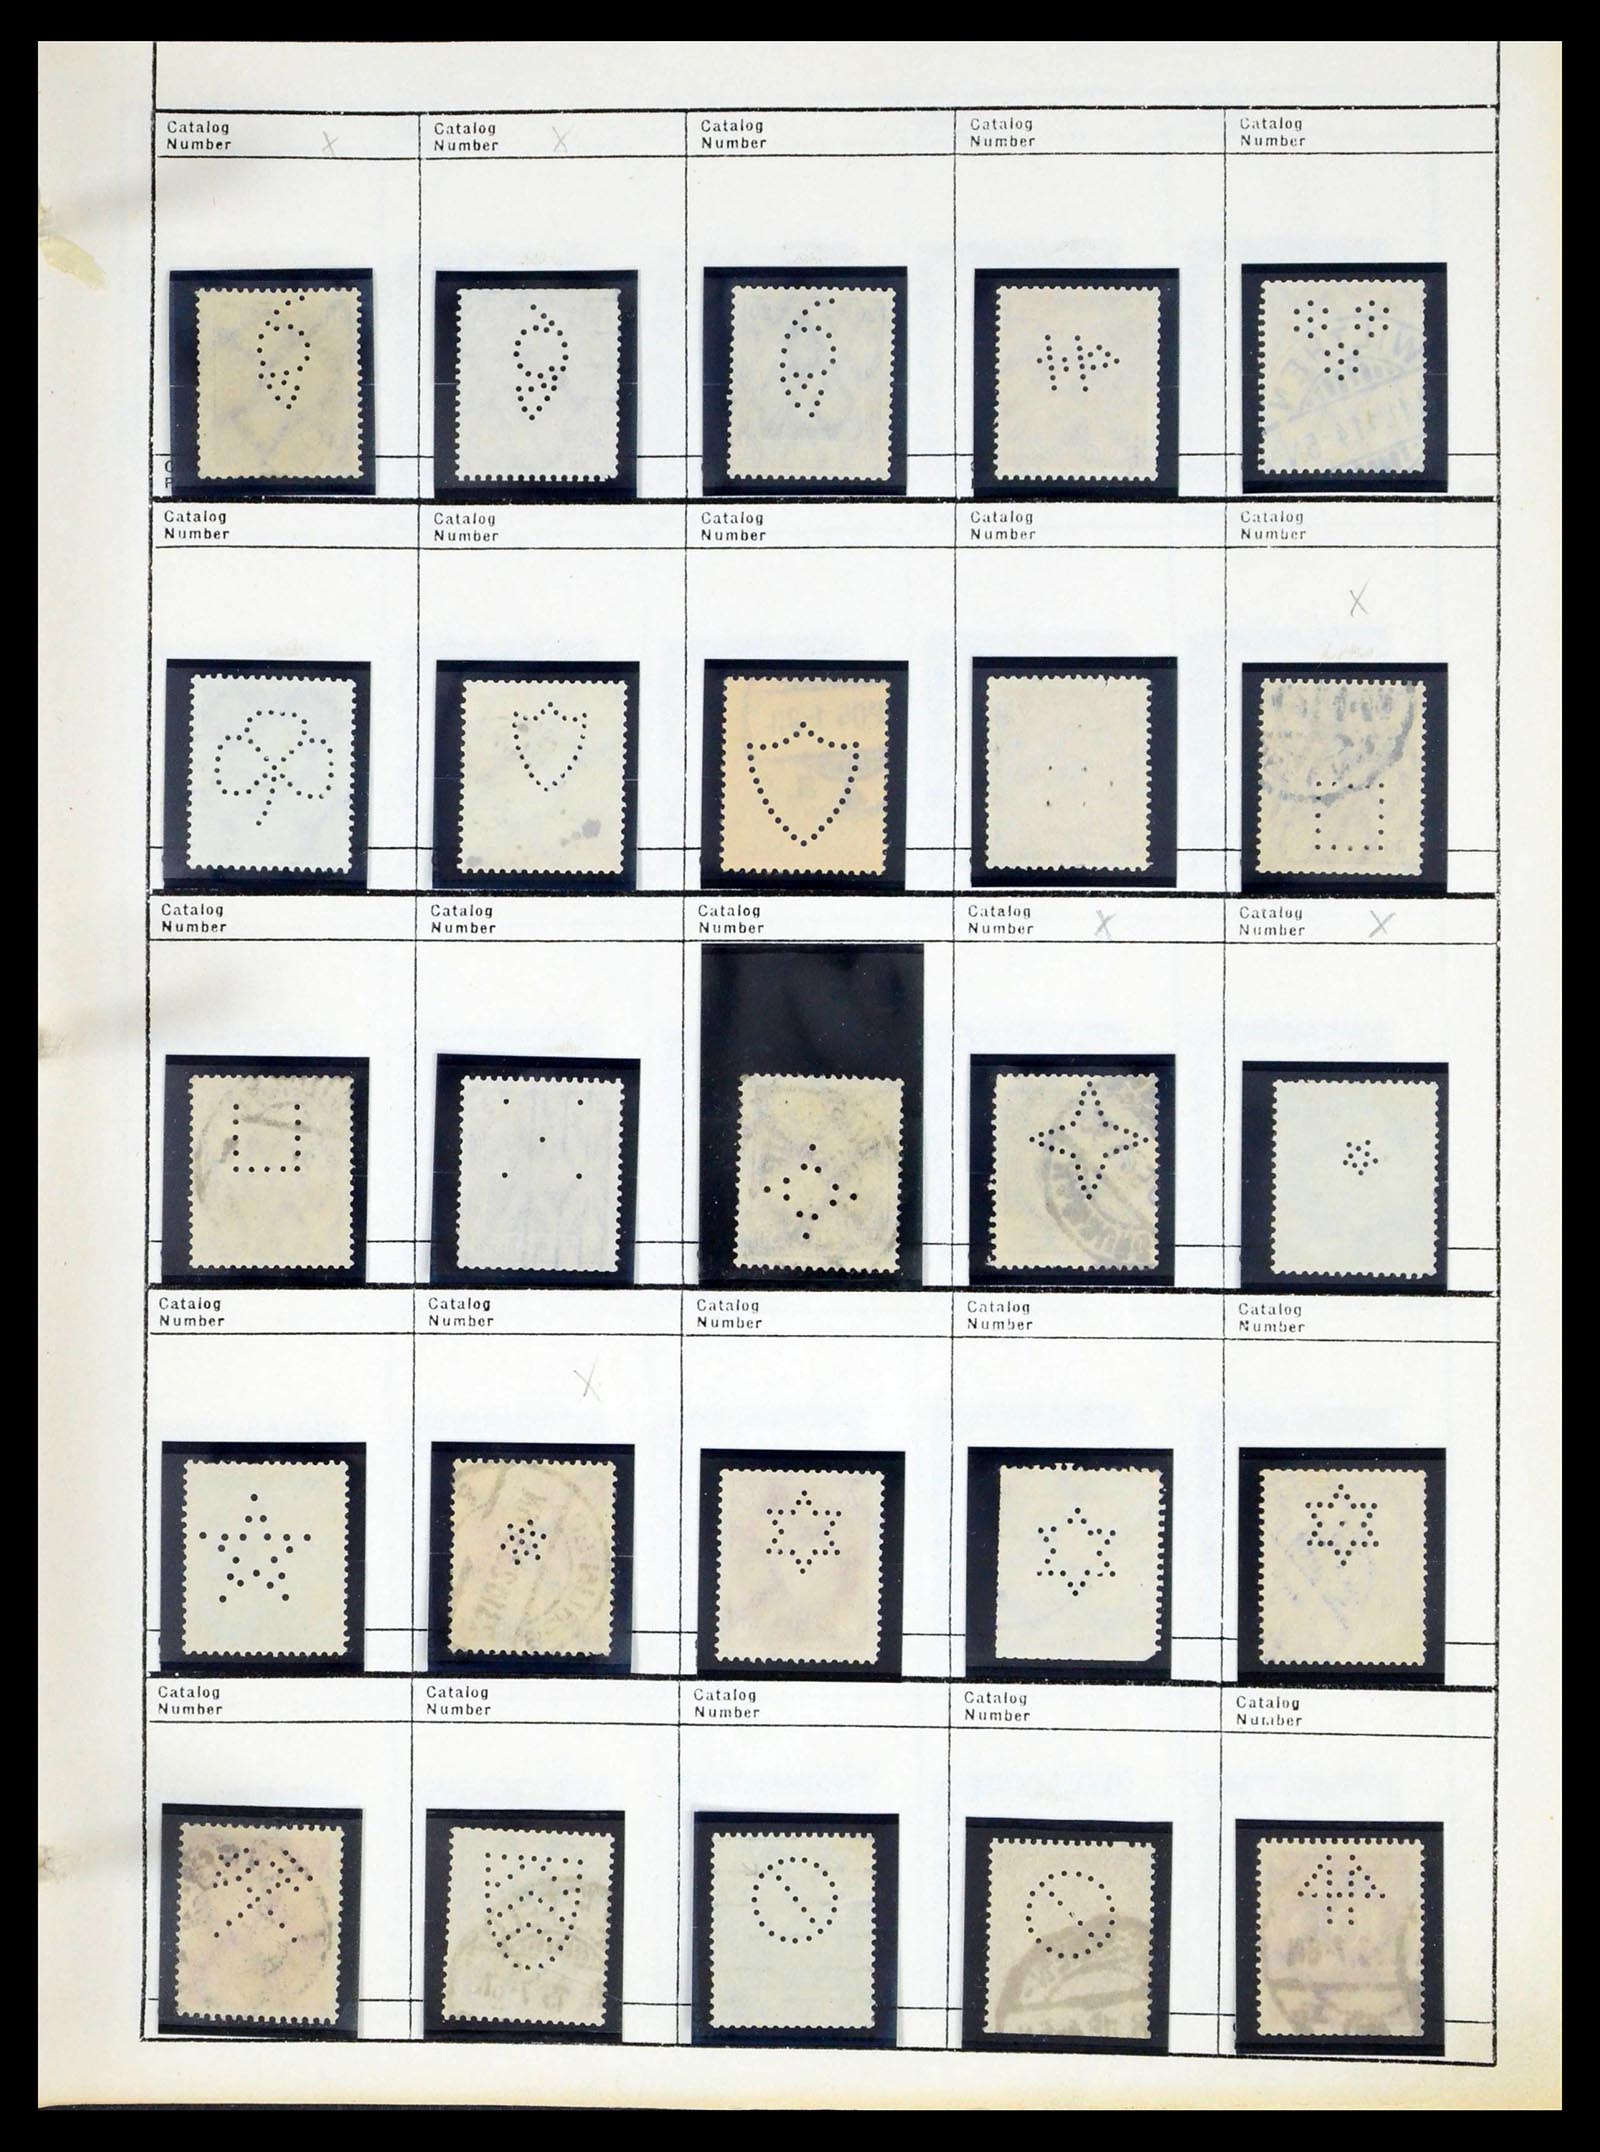 39480 0596 - Stamp collection 39480 German Reich perfins 1880-1955.